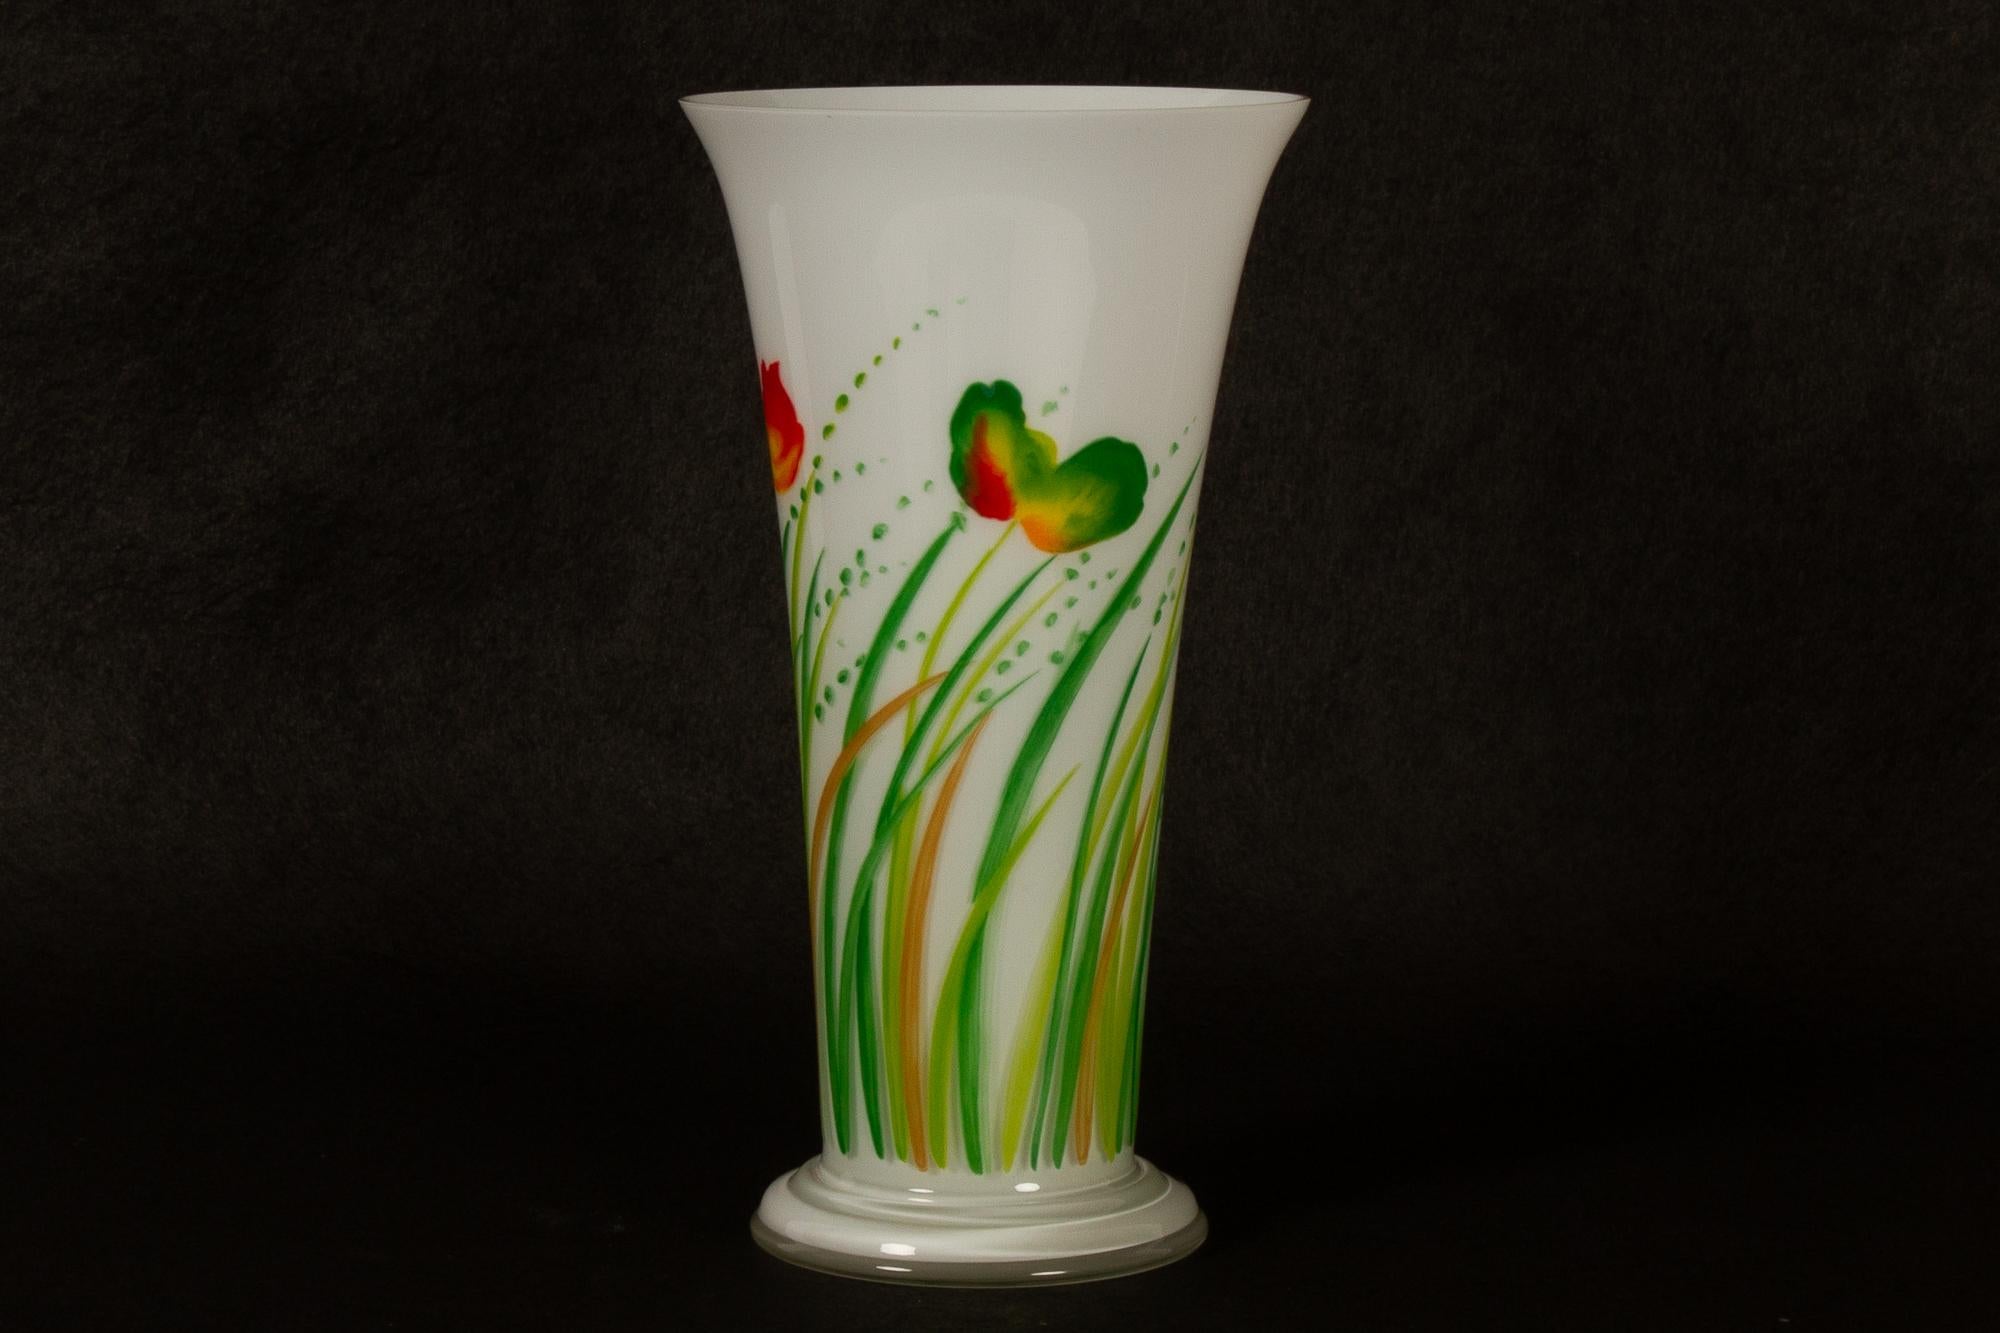 Vase en verre danois par Ole Kortzau pour Holmegaard 1978.
Grand vase en verre conçu par l'artiste danois Ole Kortzau et fabriqué par la verrerie danoise Holmegaard. Ce modèle n'a été produit que pendant une période limitée, vers 1978. Hauteur 29,5